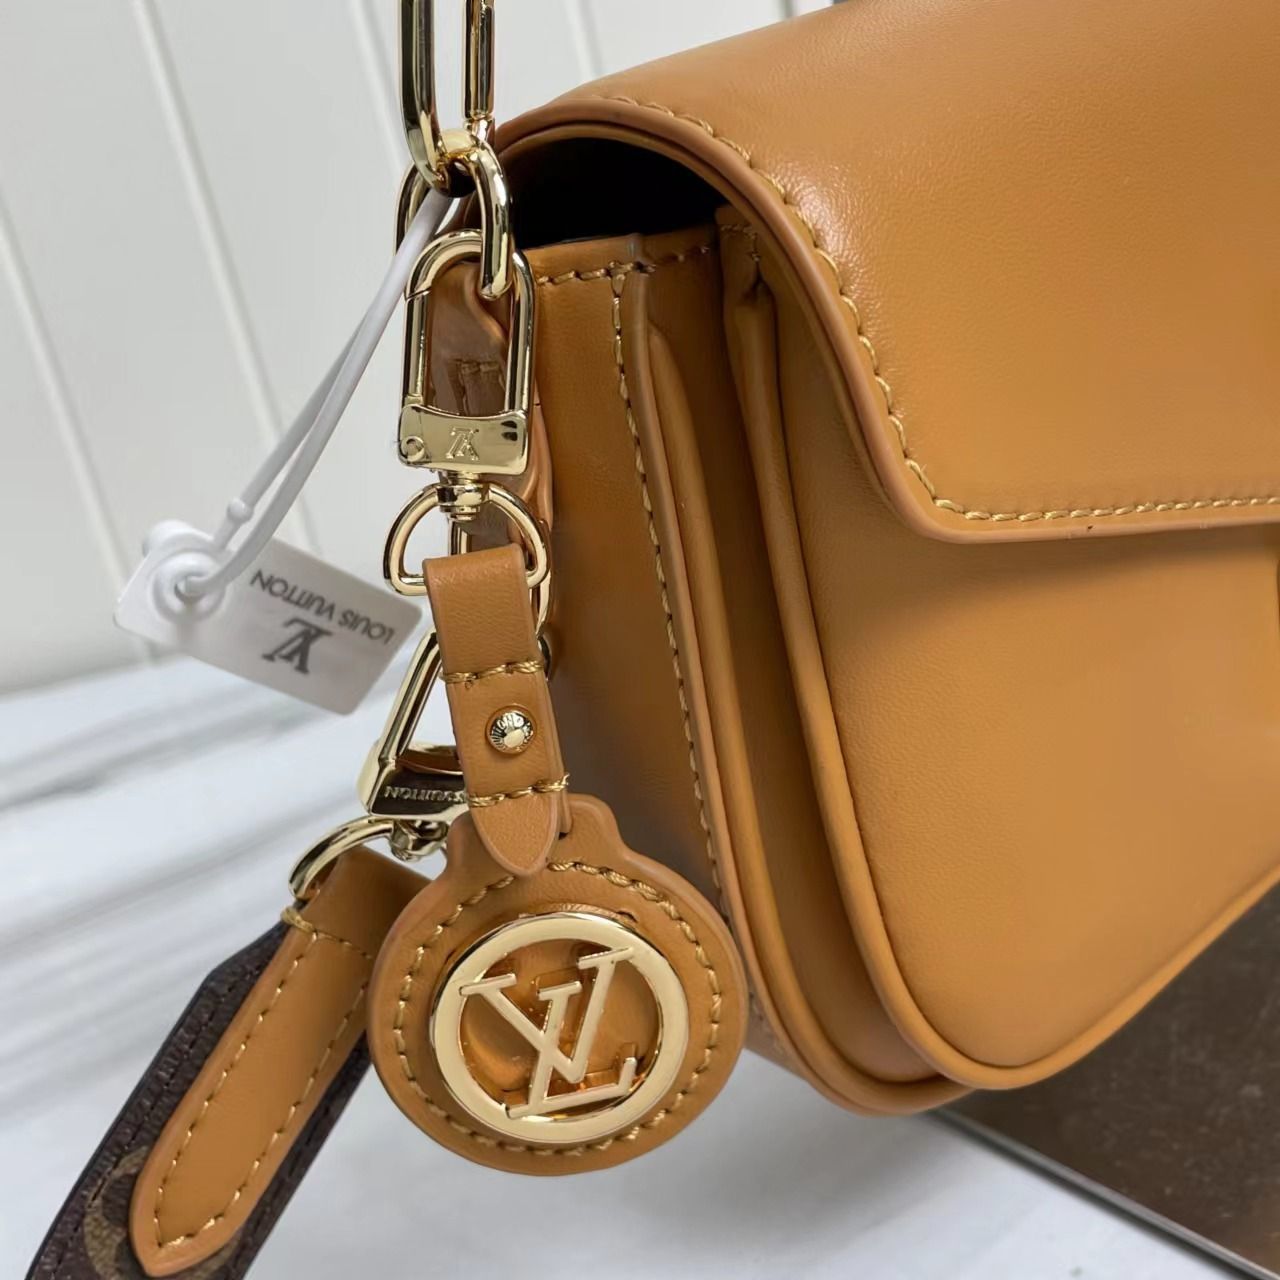 A bag Swing Fashion Leather 24 cm фото 4